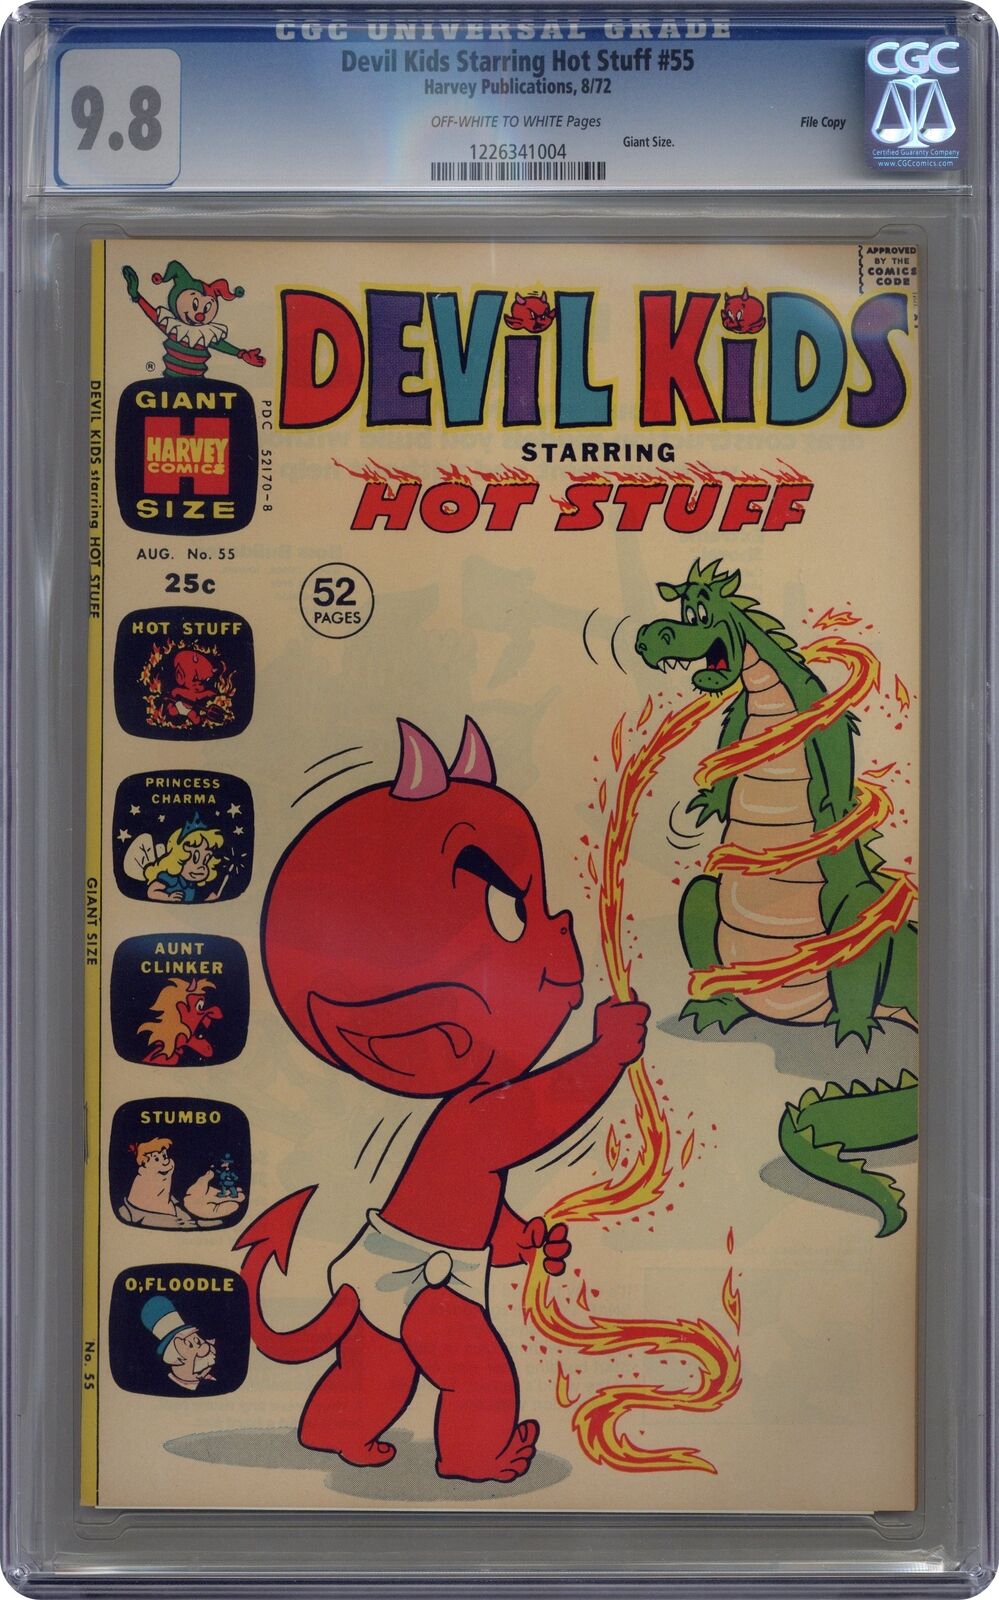 Devil Kids Starring Hot Stuff #55 CGC 9.8 1972 1226341004